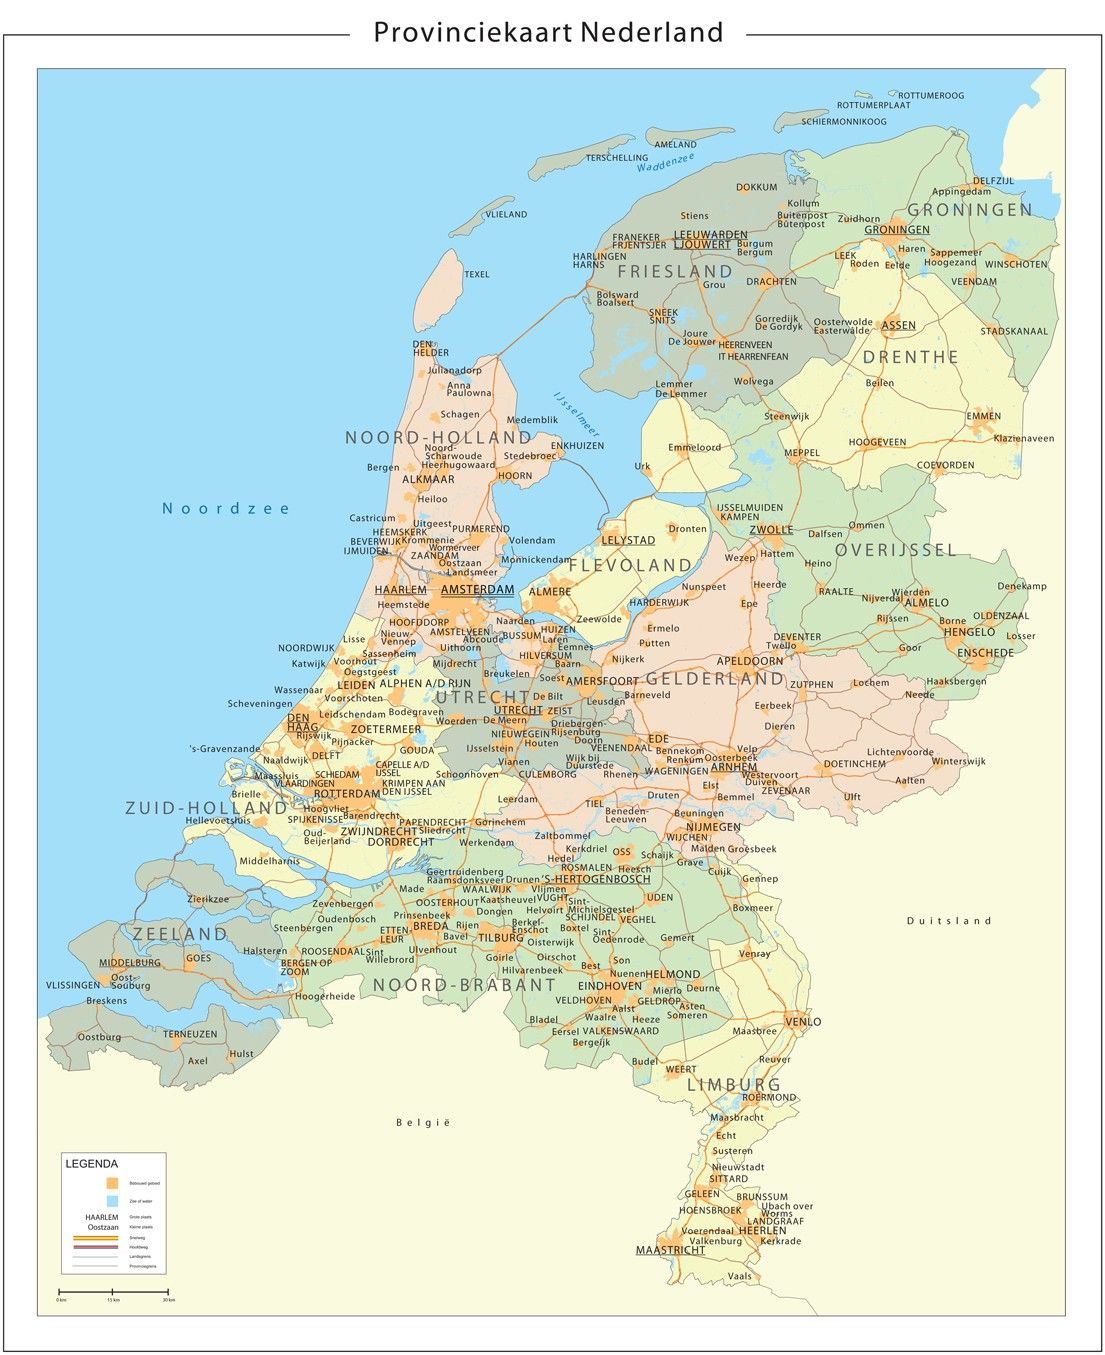 Provinciekart van Nederland 1:250.000 400dpi